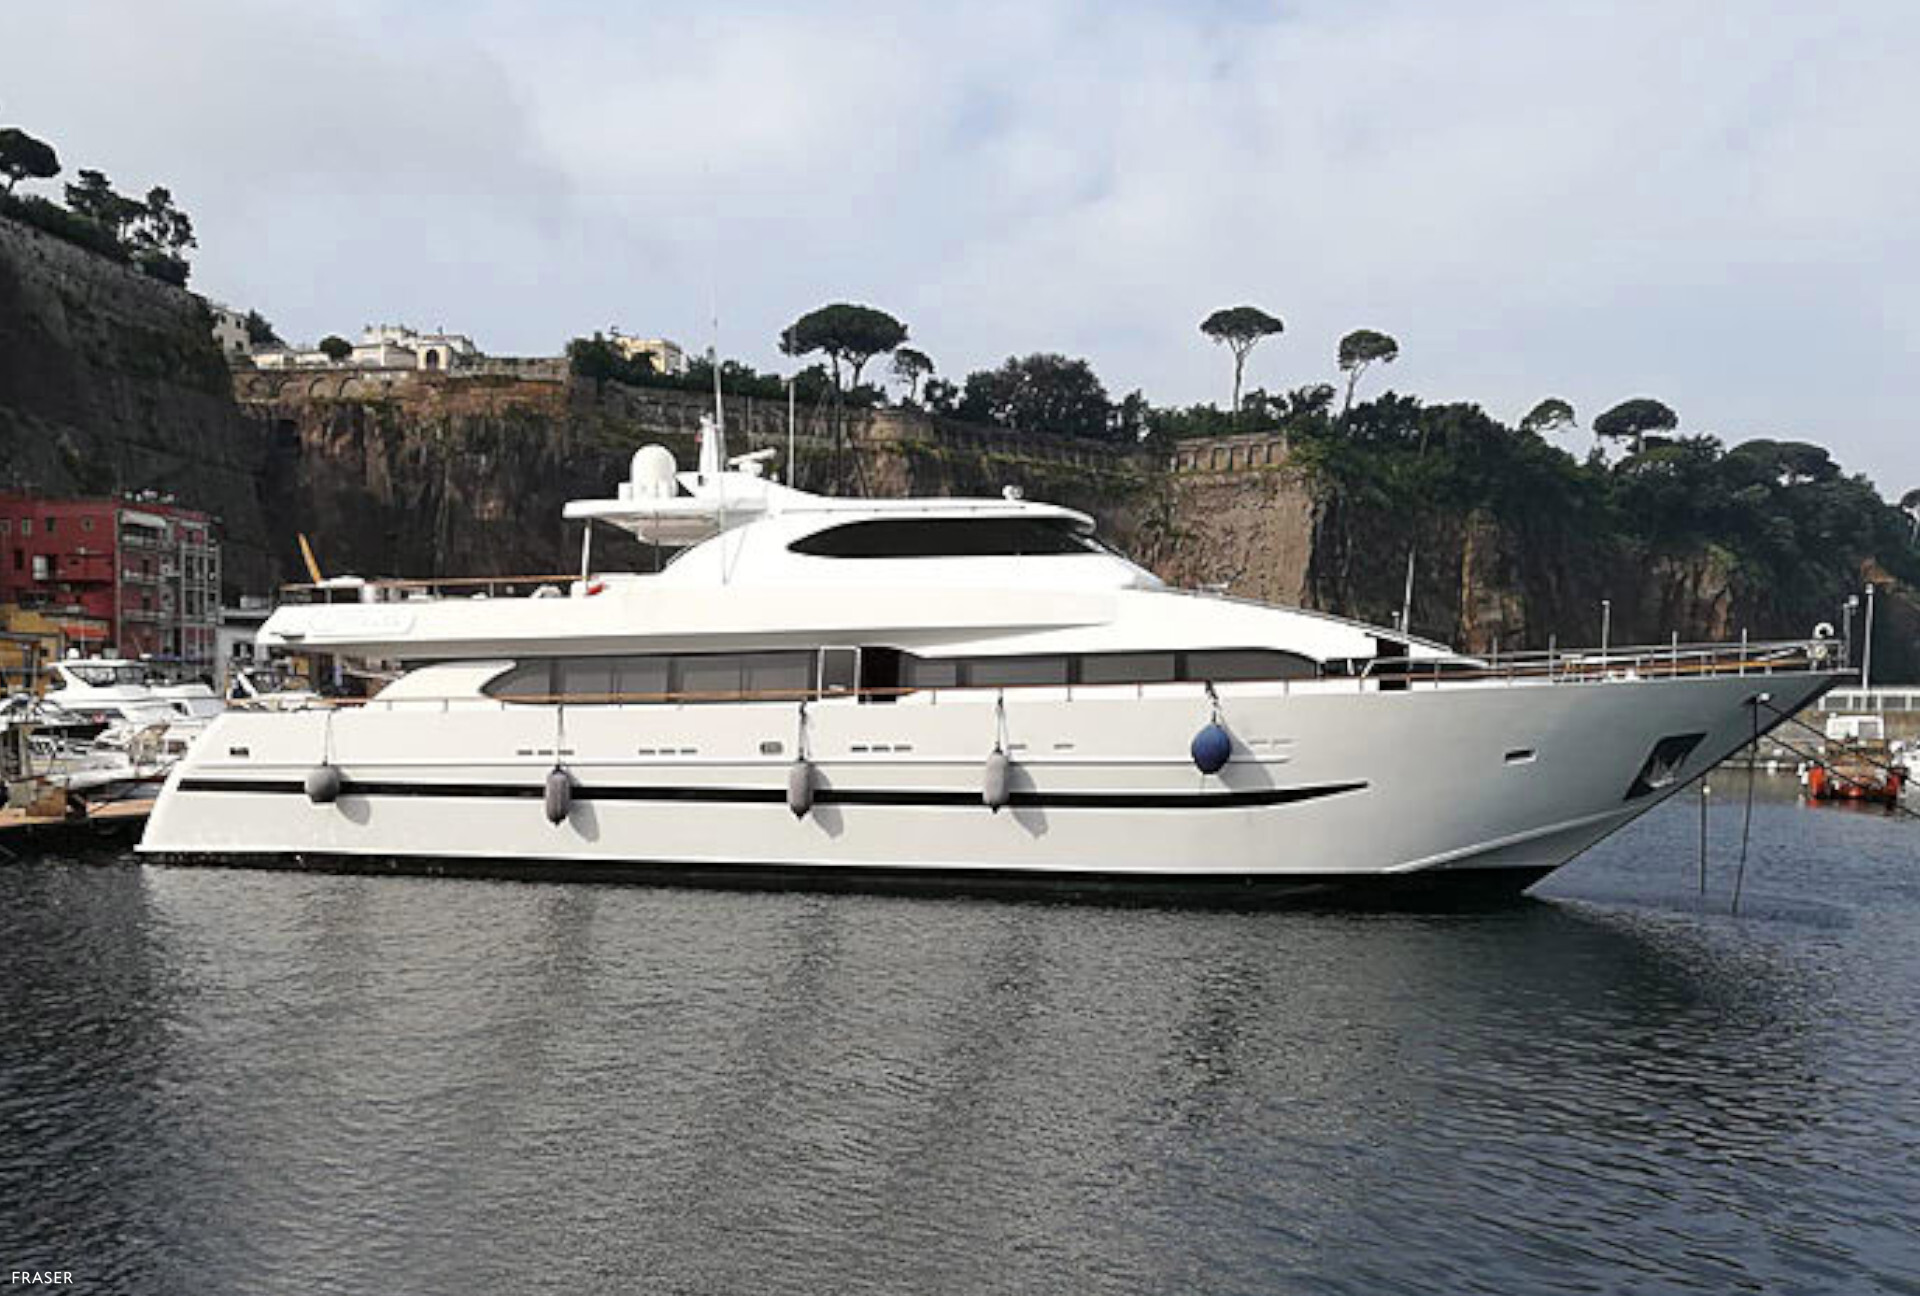 GIAVA motor yacht for sale by FRASER, built by Castagnola Cantieri Navali del Tigullio